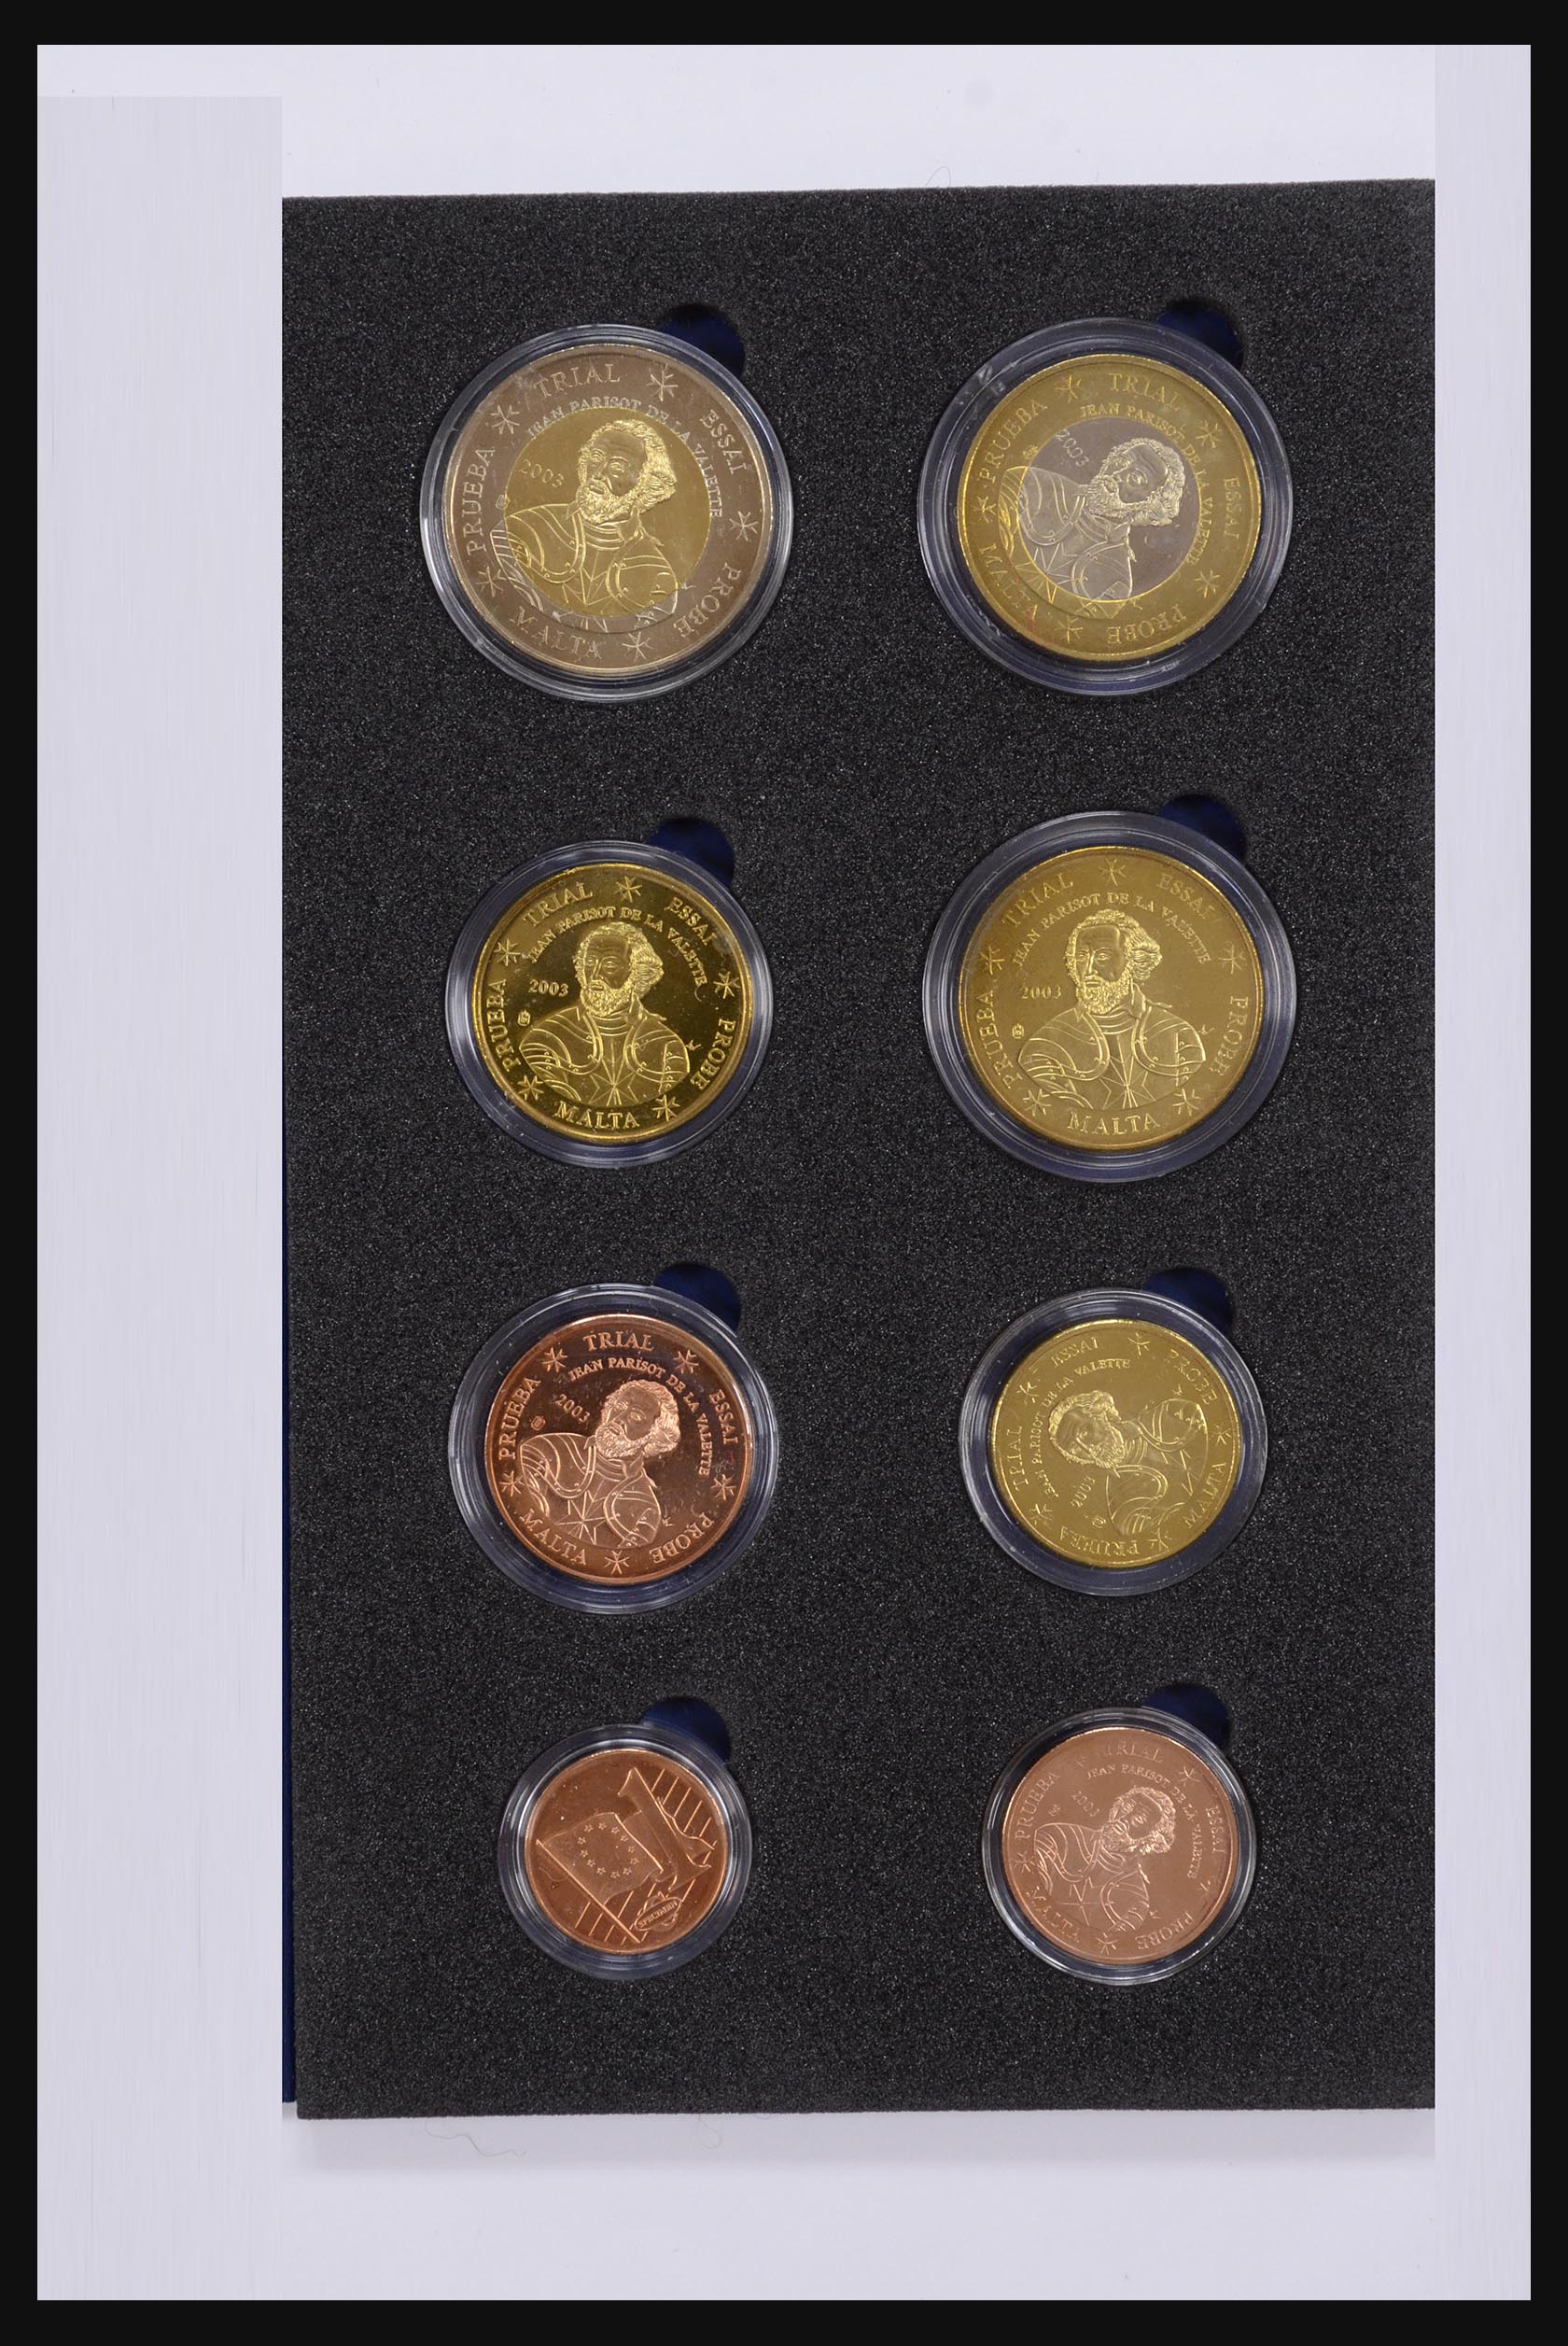 32149 031 - 32149 Europese landen euromunten 2003.